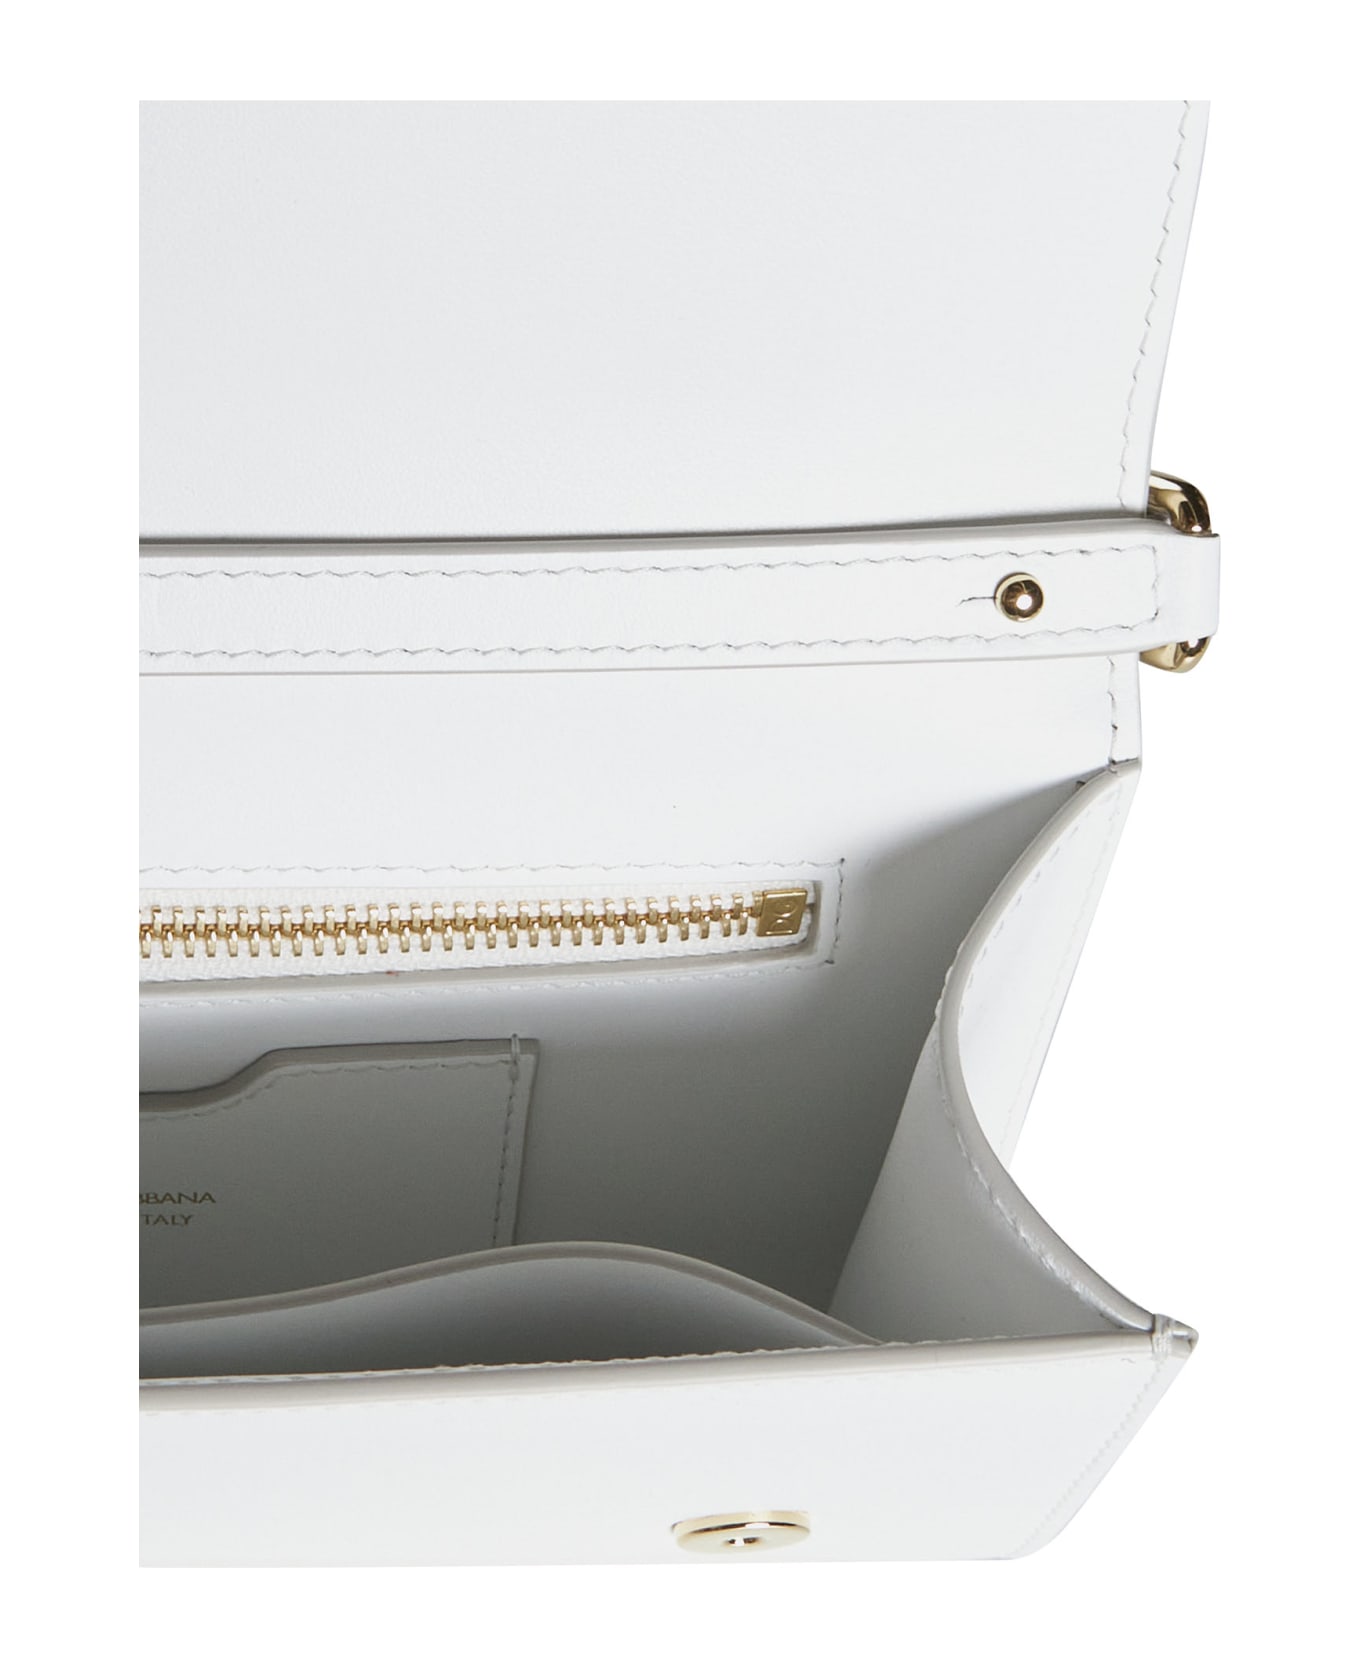 Dolce & Gabbana Shoulder Bag - Bianco